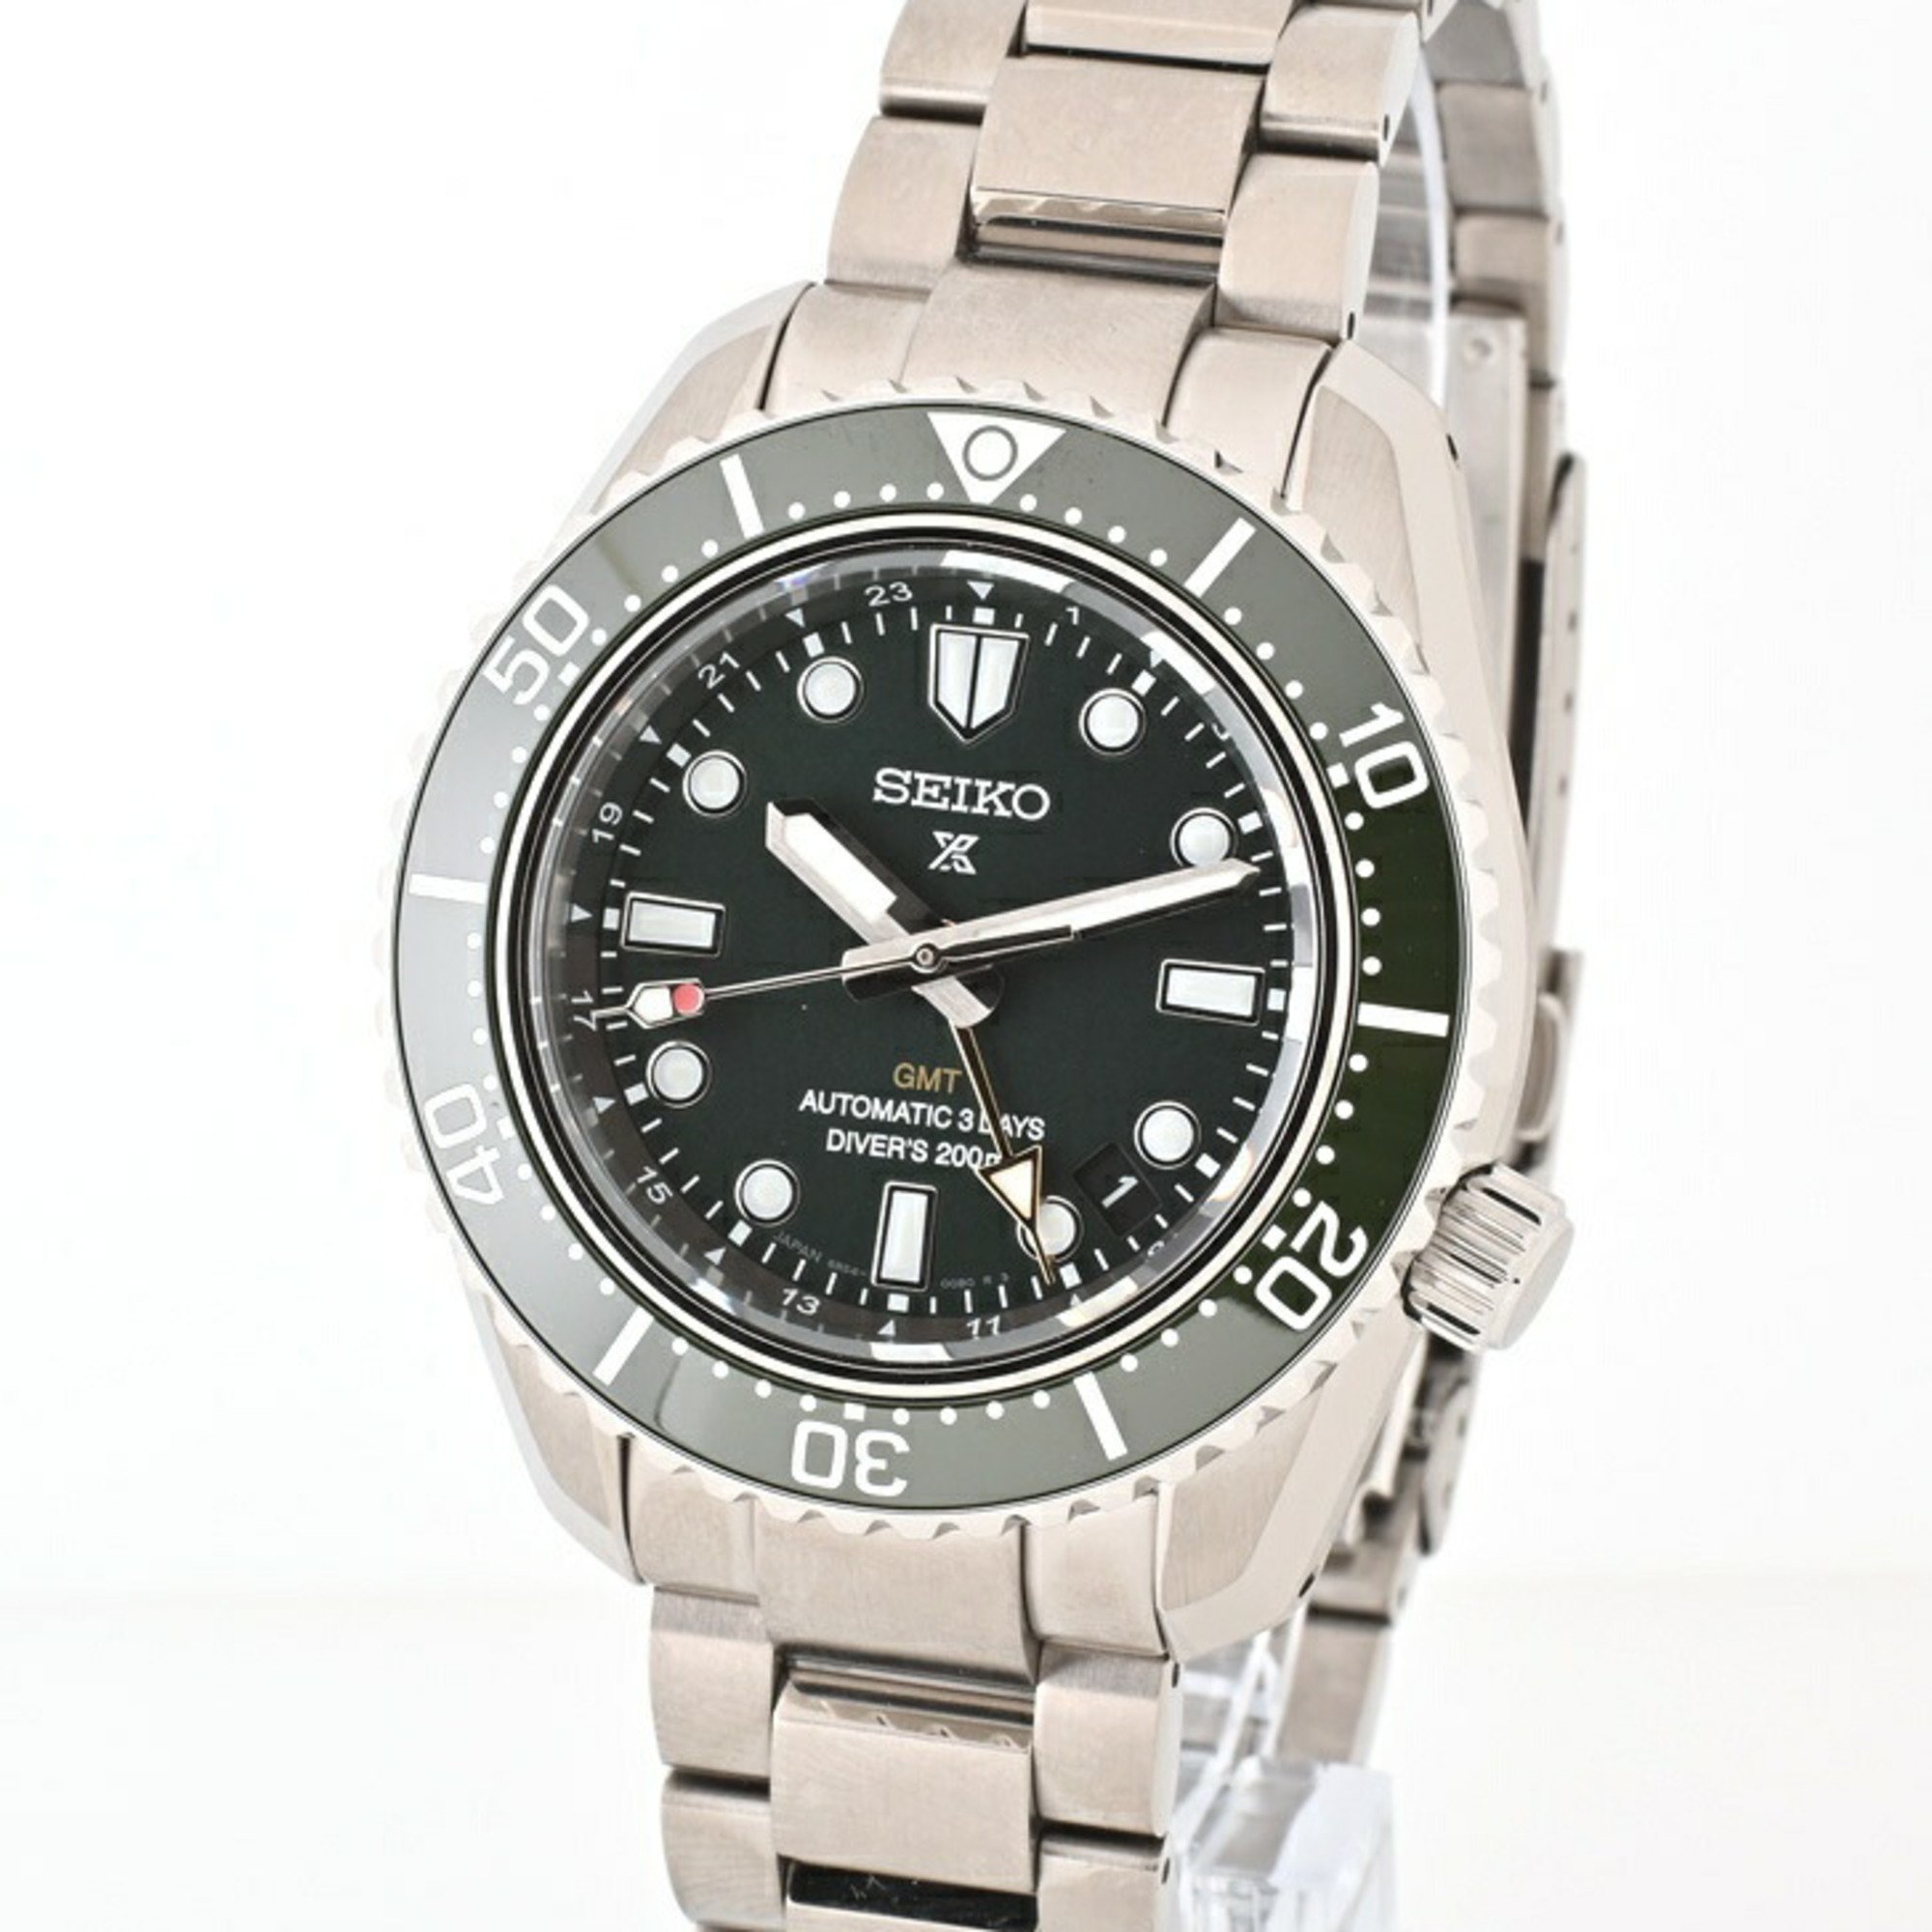 SEIKO PROSPEX Diver Scuba GMT Watch SBEJ009 6R5400D0 Green Automatic Winding E-154720